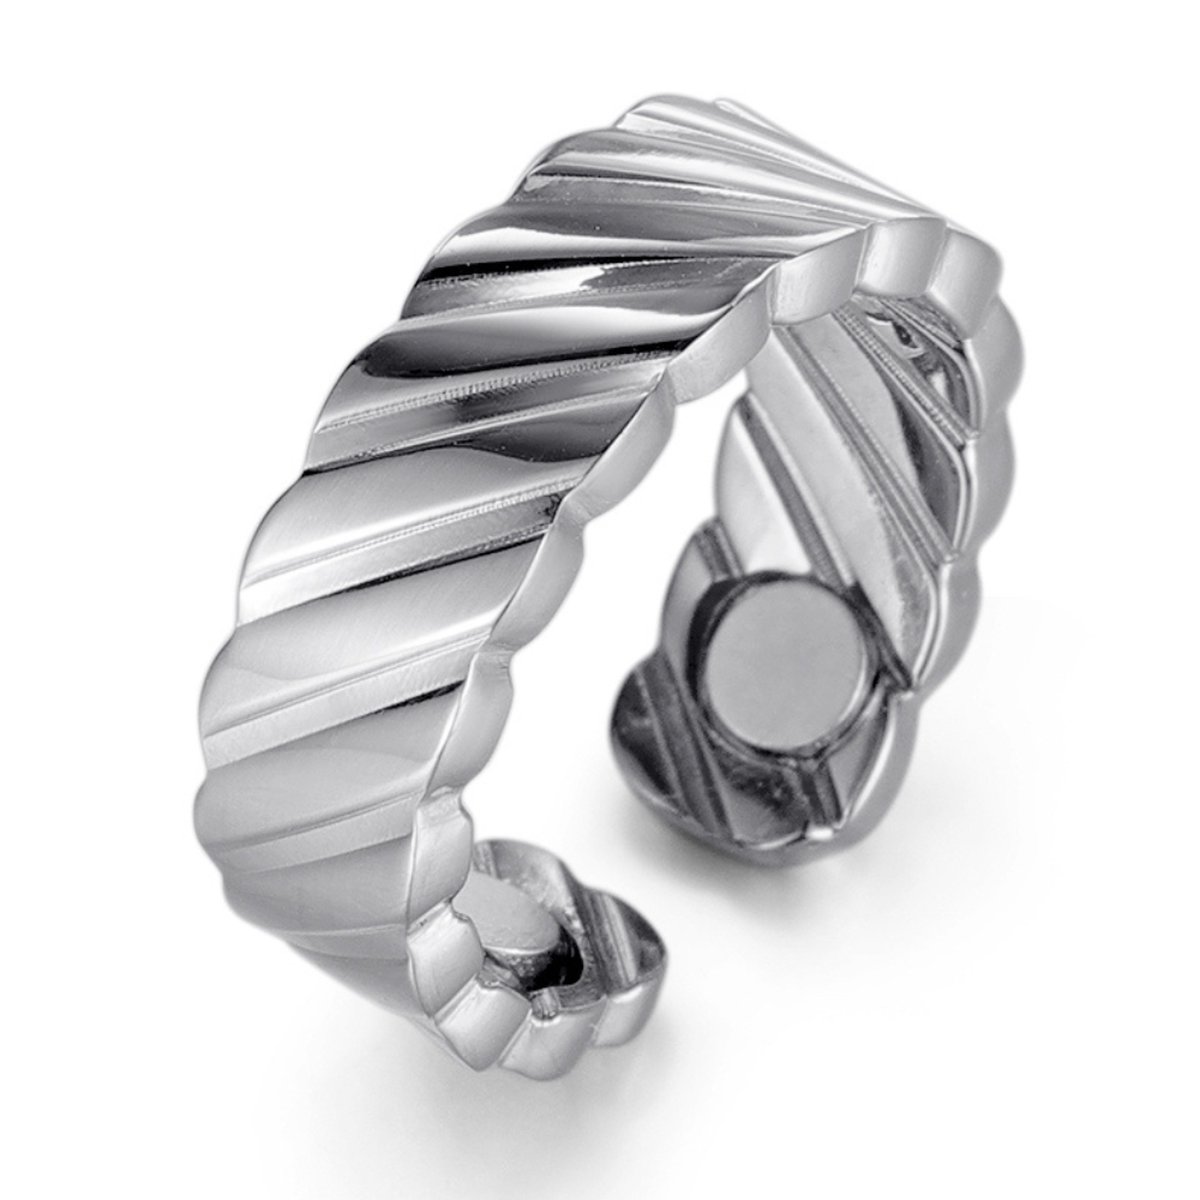 MAGNETOX - Helende Ring 'Fenne' - Magneet Ring - Gezondheidsring - Magnetische Ring - Roestvrijstaal (RVS) - Zilver - Dames - 56mm